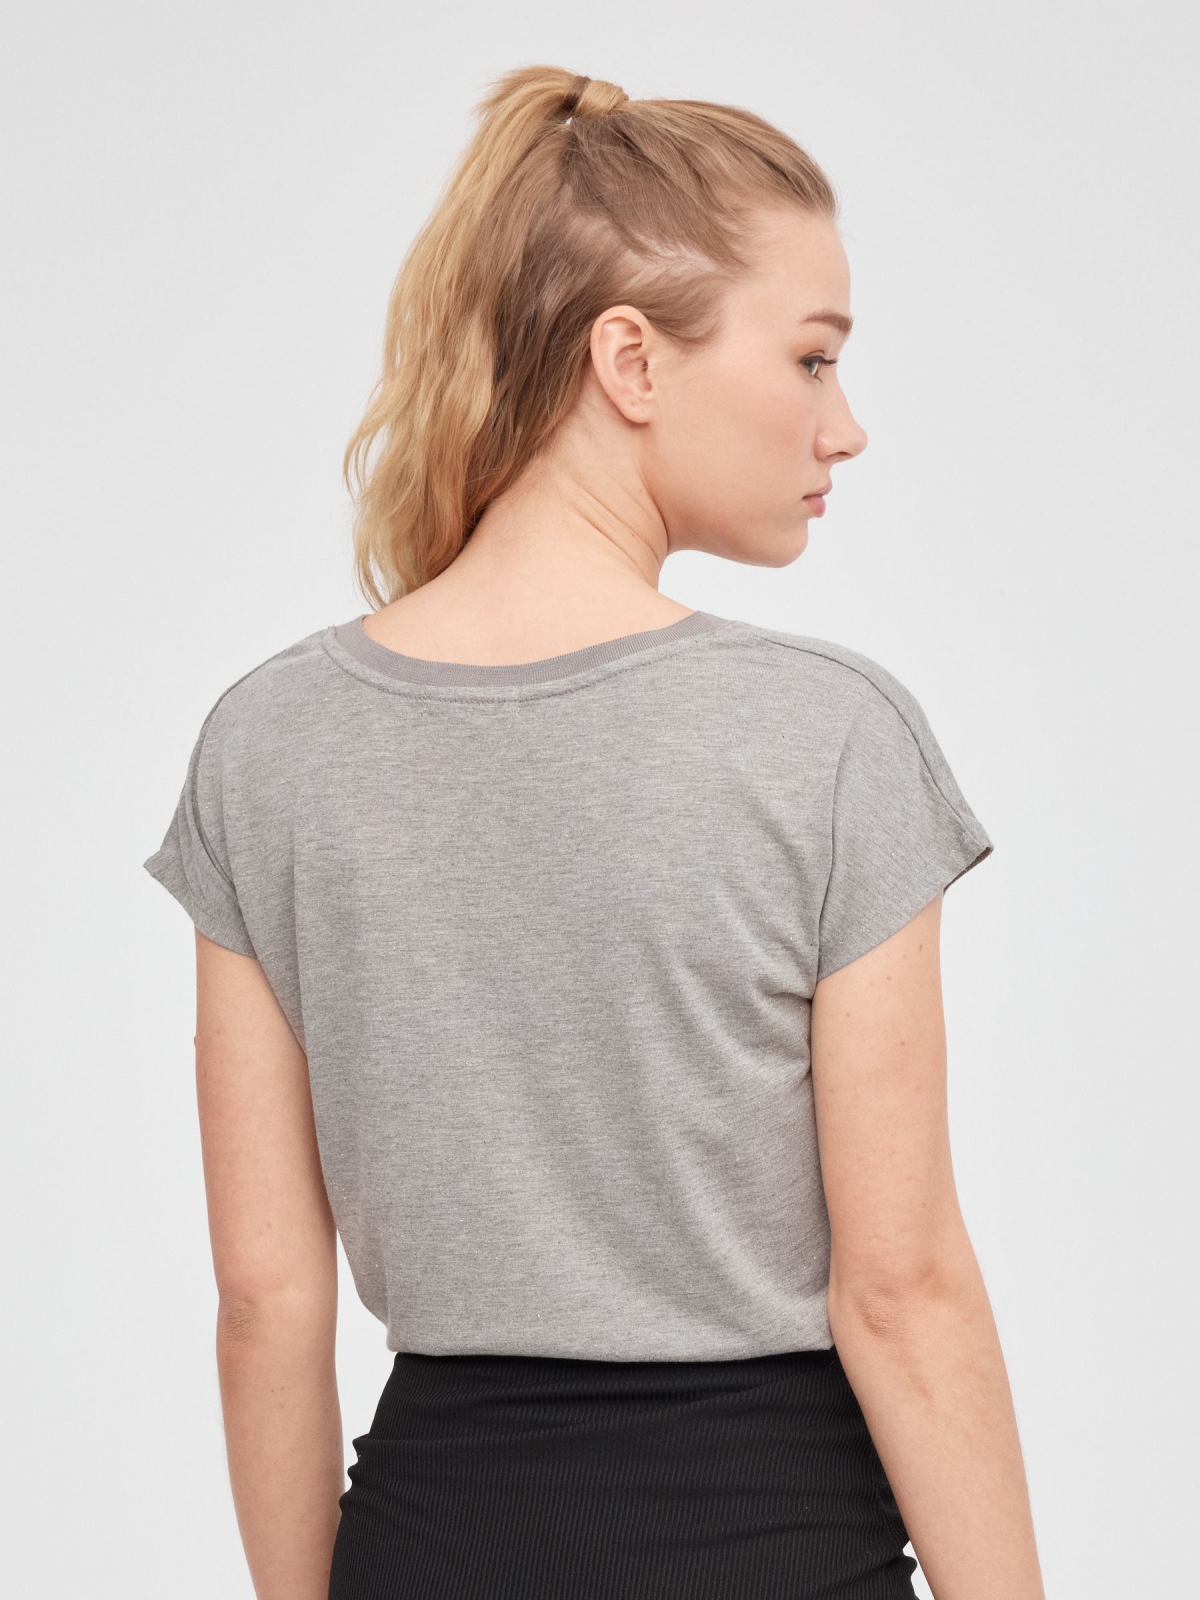 Camiseta sin mangas con cuello de pico gris vista media trasera